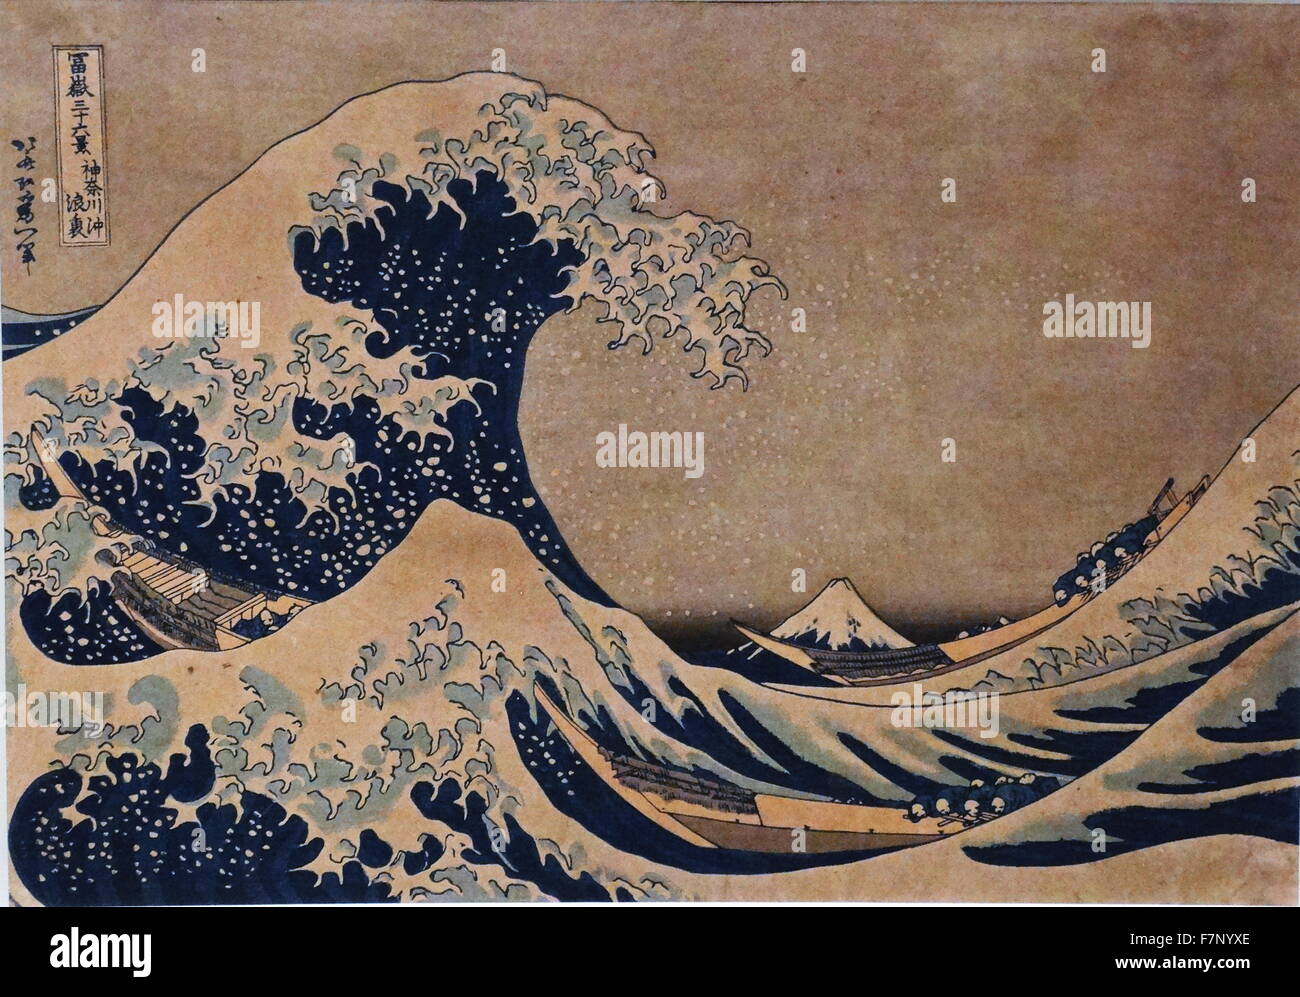 Die große Welle von Kanagawa von japanischen Künstlers Katsushika Hokusai (1760-1849), Ukiyo-e Maler und Grafiker der Edo-Zeit. Vom Jahre 1832 Stockfoto